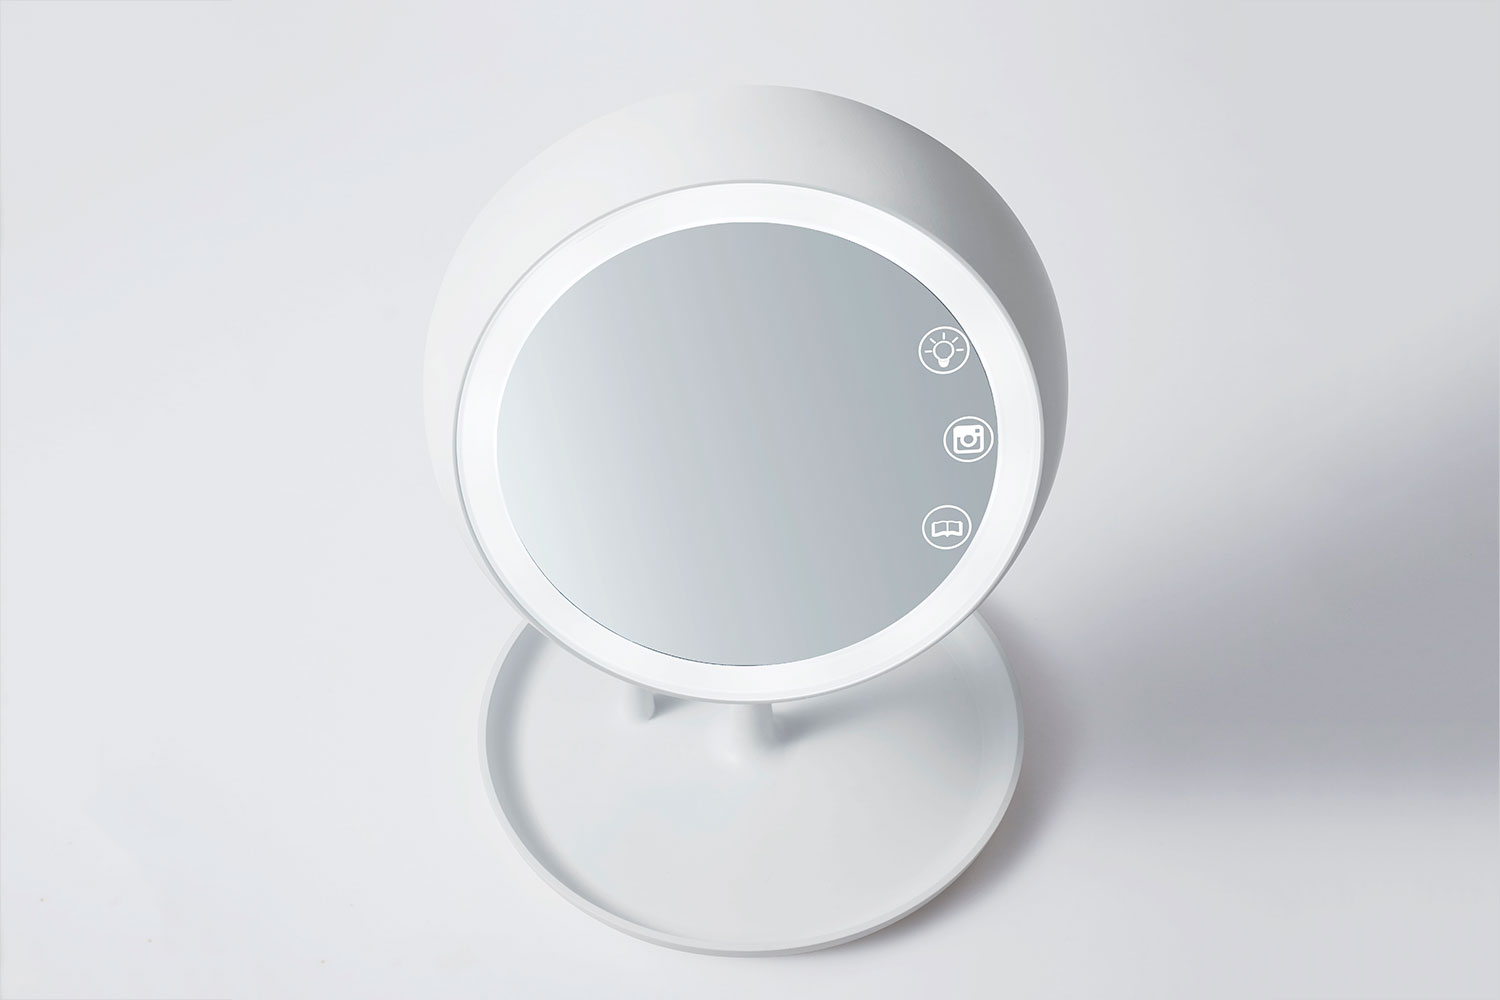 juno smart mirror topside